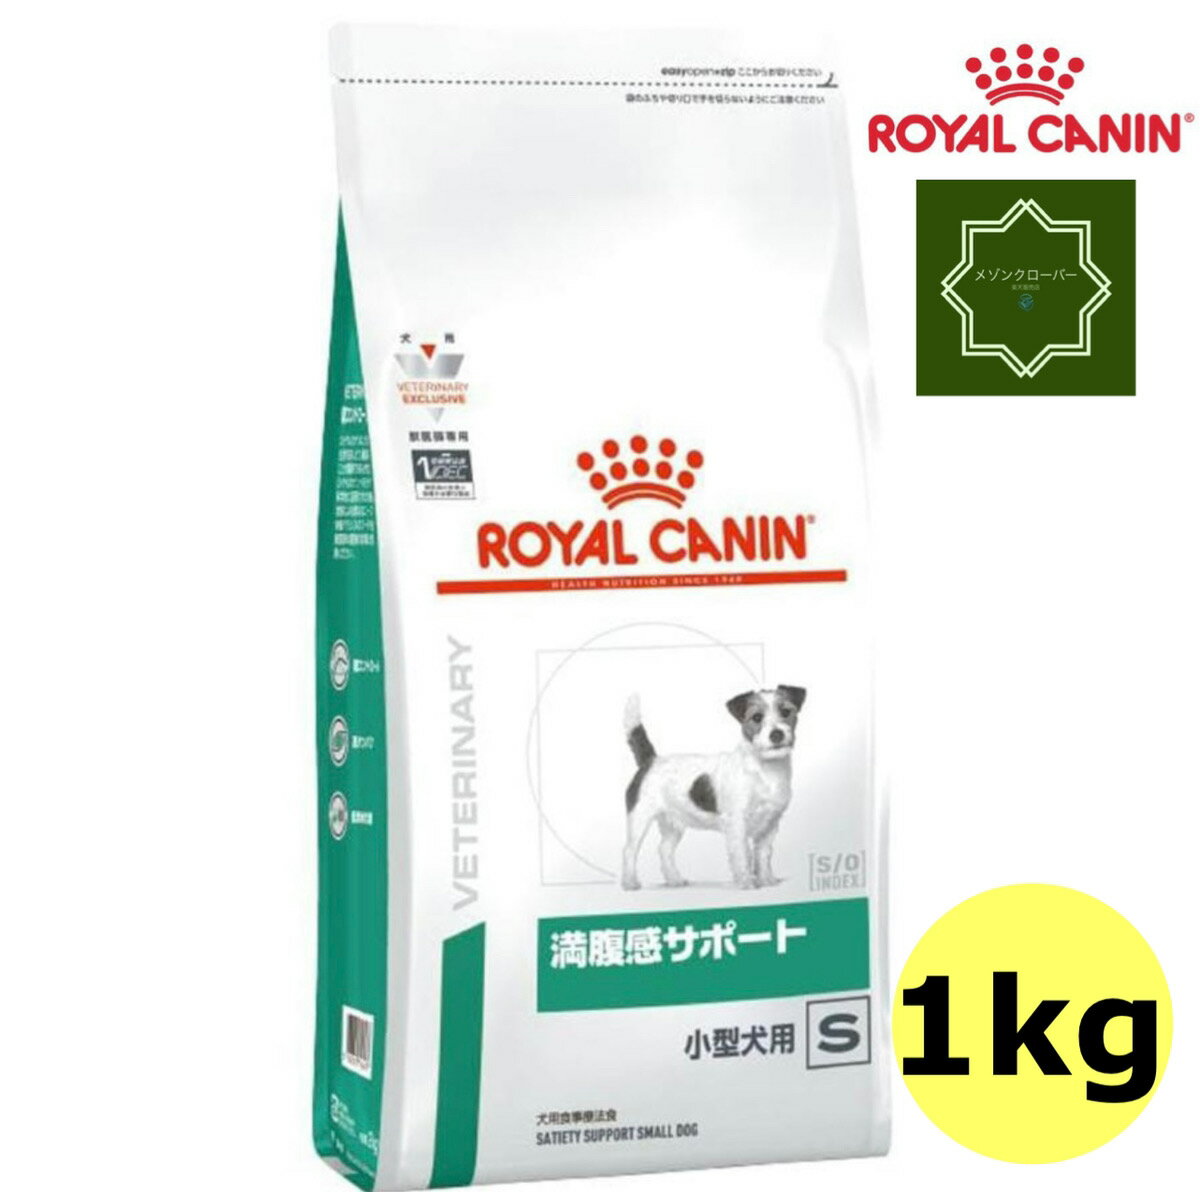 ロイヤルカナン 犬用 満腹感サポート 小型犬用S 1kg ドライフード 療法食